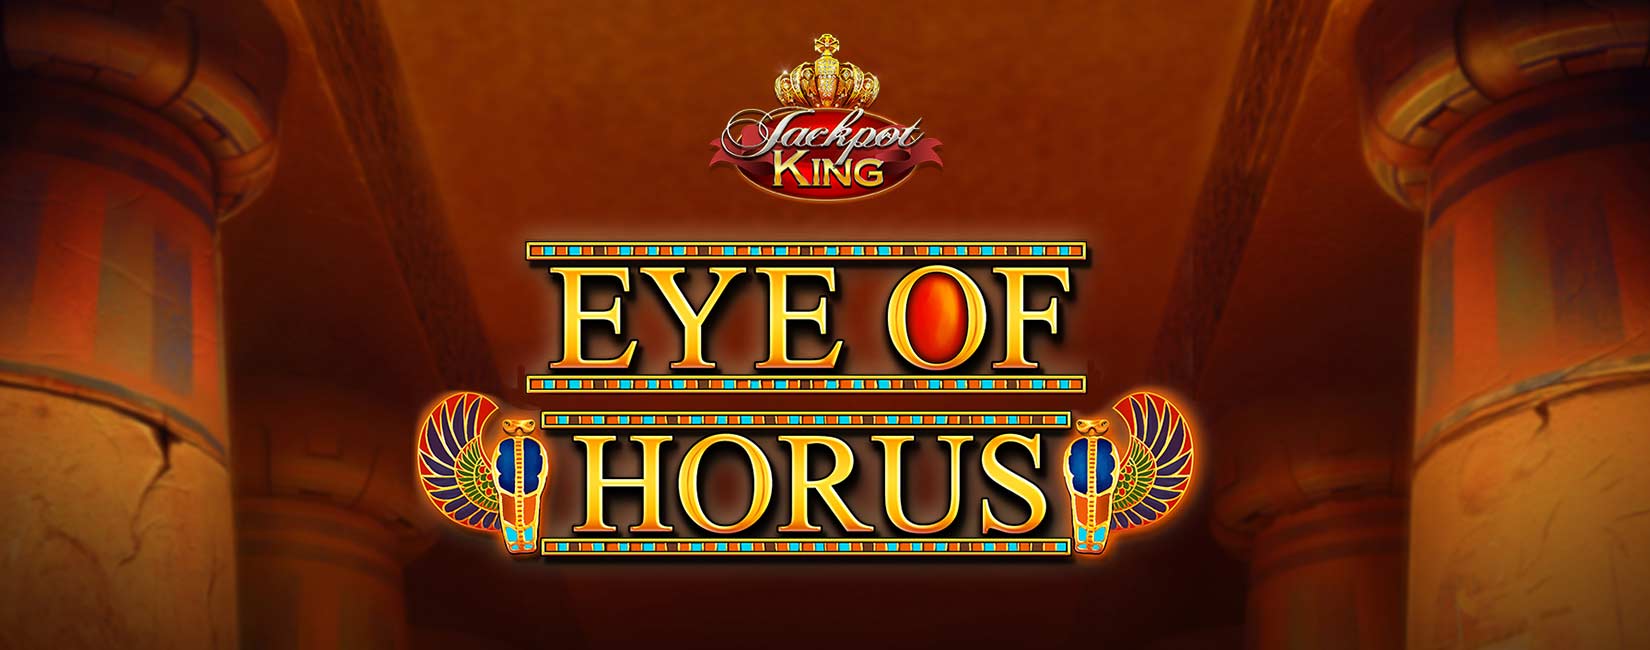 Eye of Horus Jackpot King Game